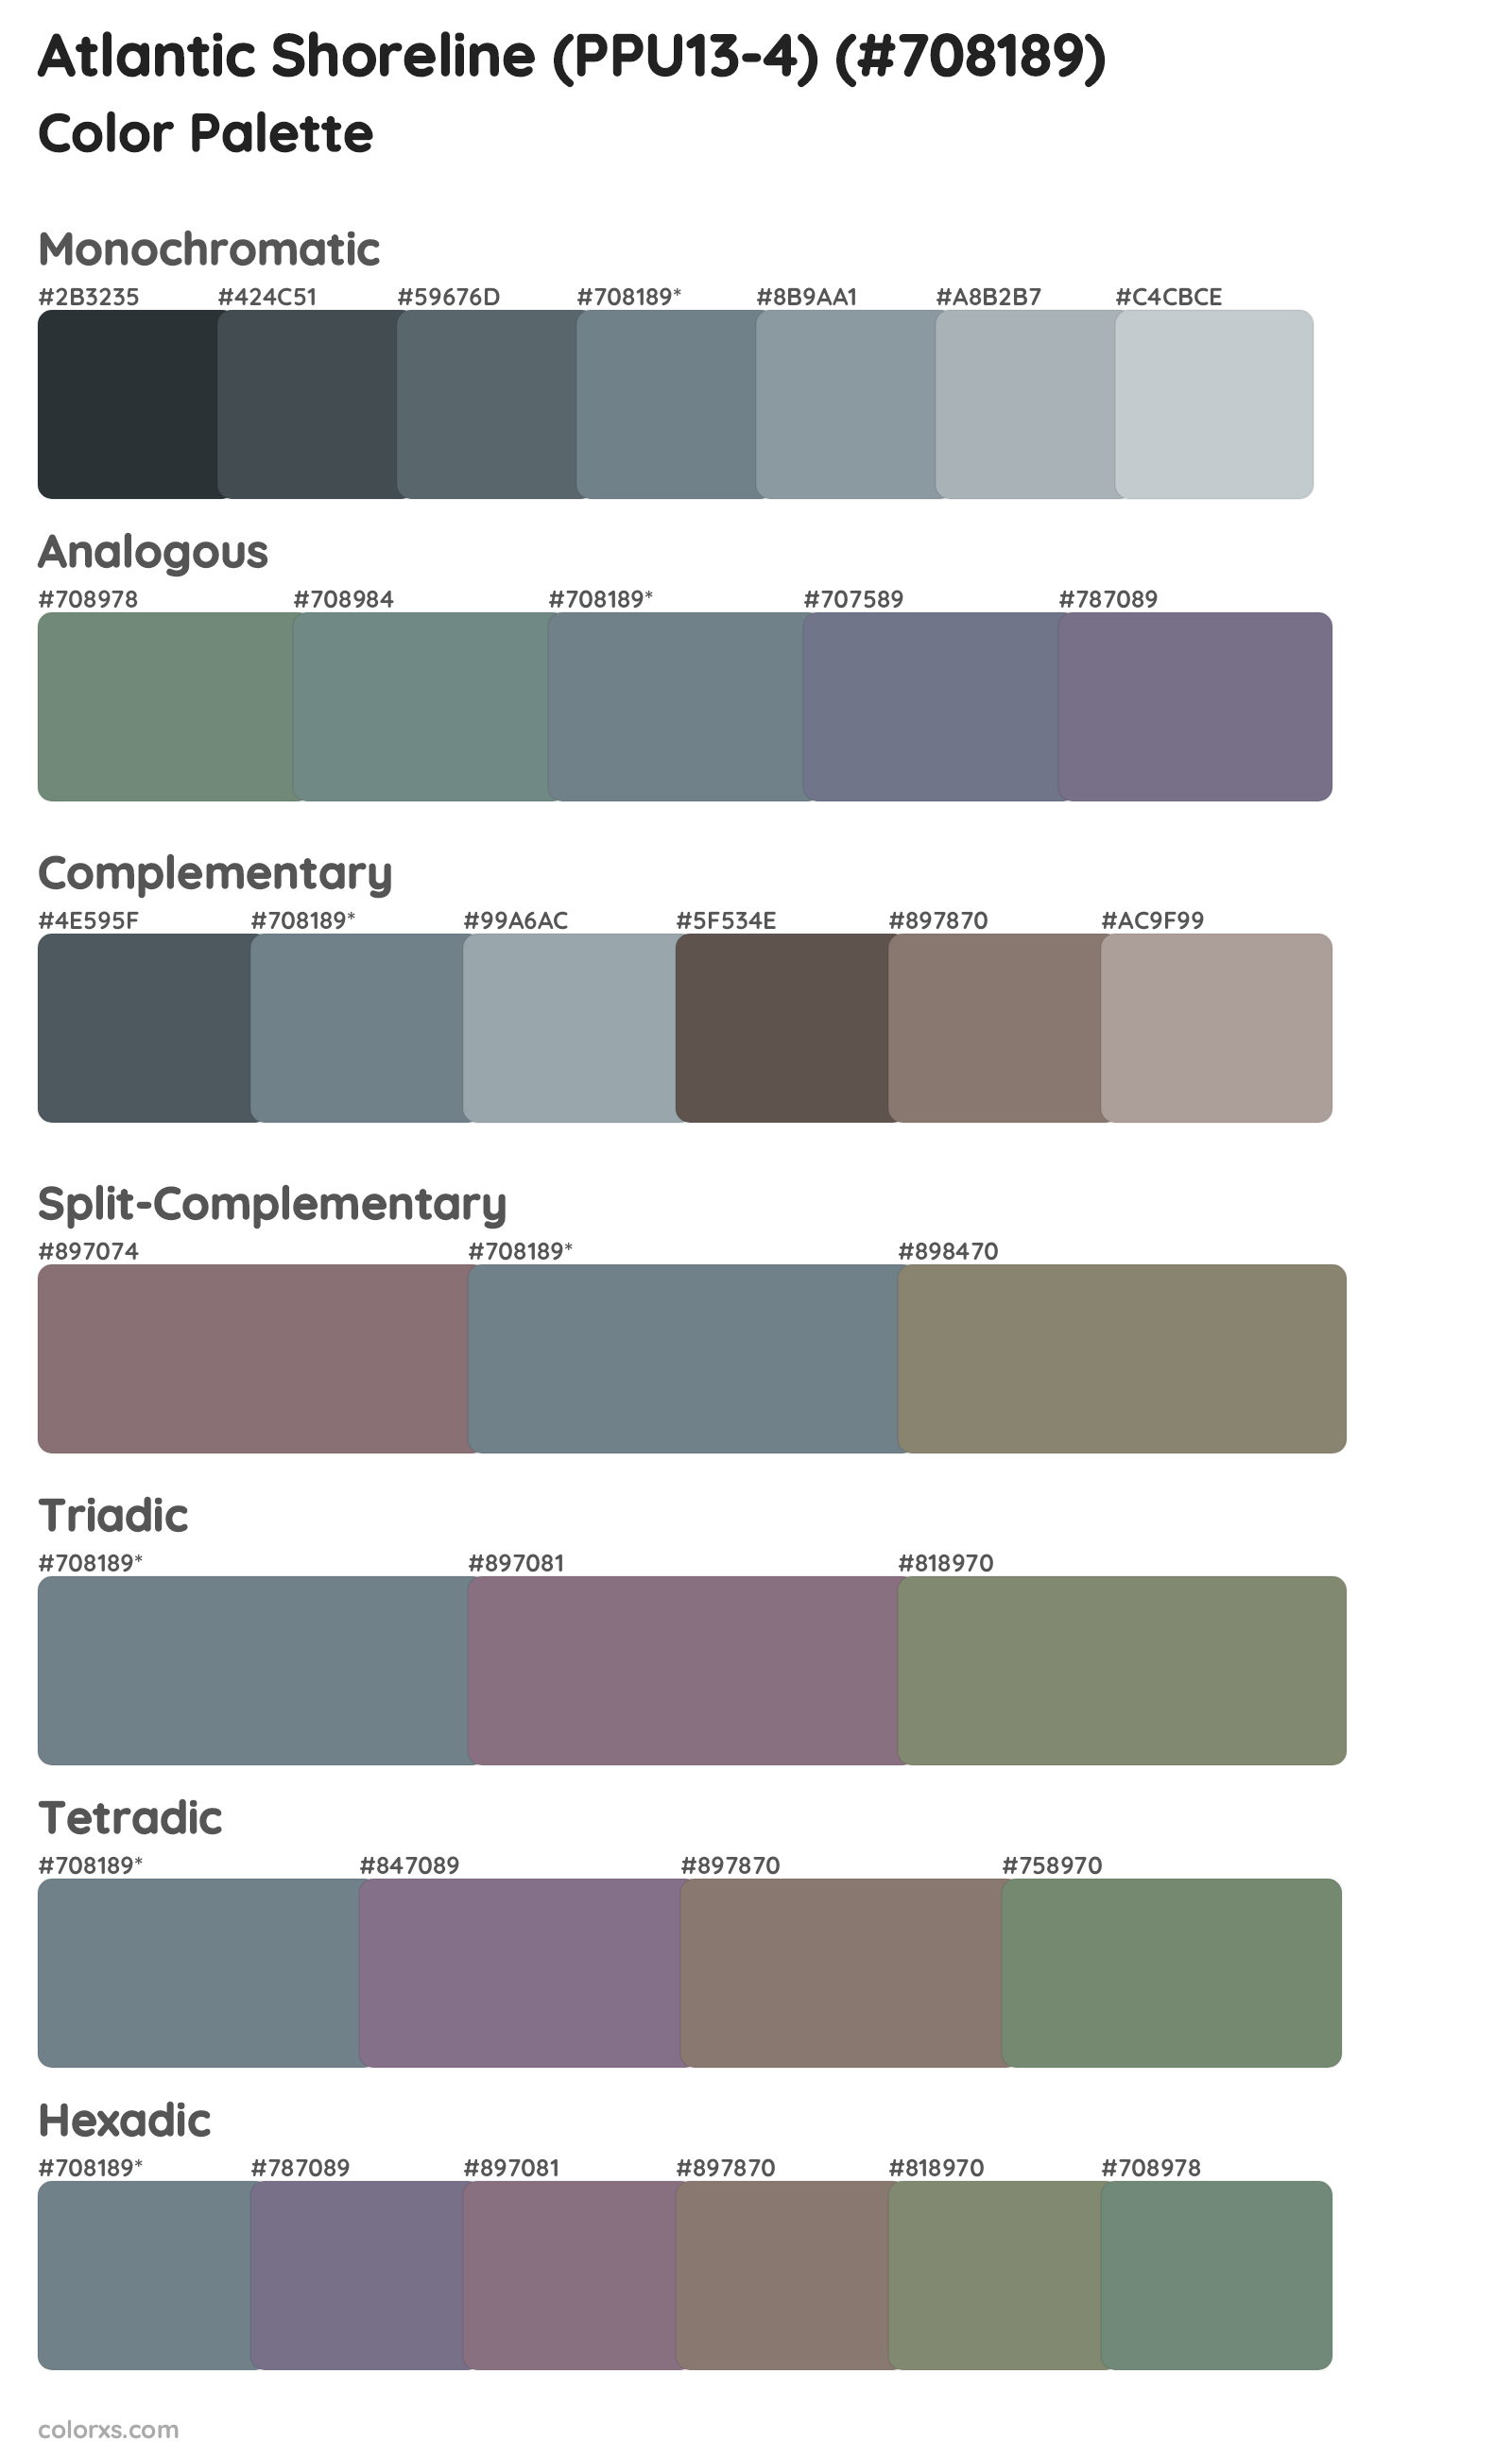 Atlantic Shoreline (PPU13-4) Color Scheme Palettes